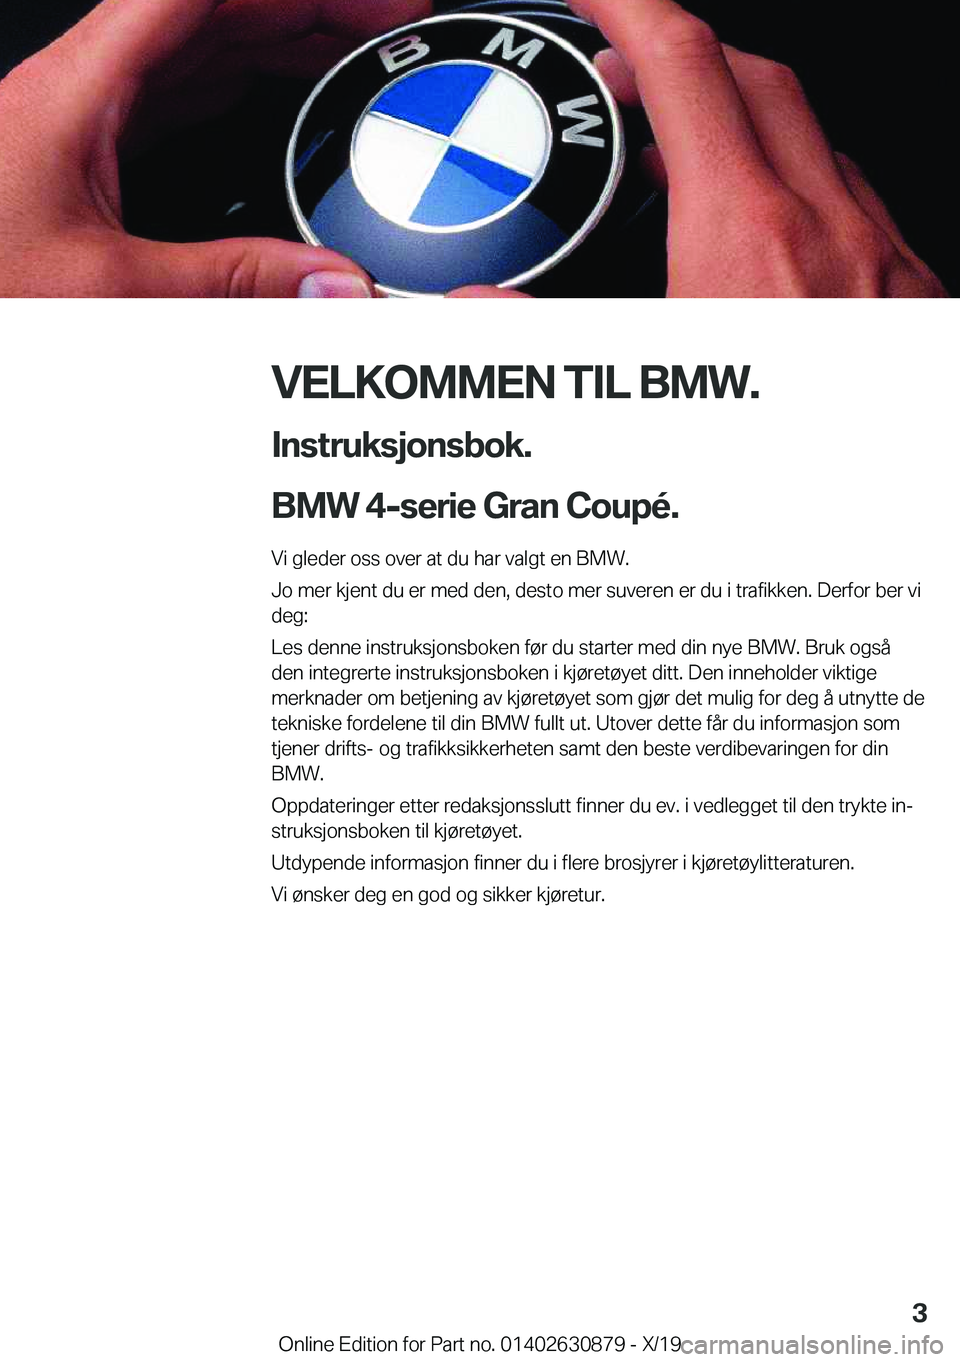 BMW 4 SERIES GRAN COUPE 2020  InstruksjonsbØker (in Norwegian) �V�E�L�K�O�M�M�E�N��T�I�L��B�M�W�.�I�n�s�t�r�u�k�s�j�o�n�s�b�o�k�.
�B�M�W��4�-�s�e�r�i�e��G�r�a�n��C�o�u�p�